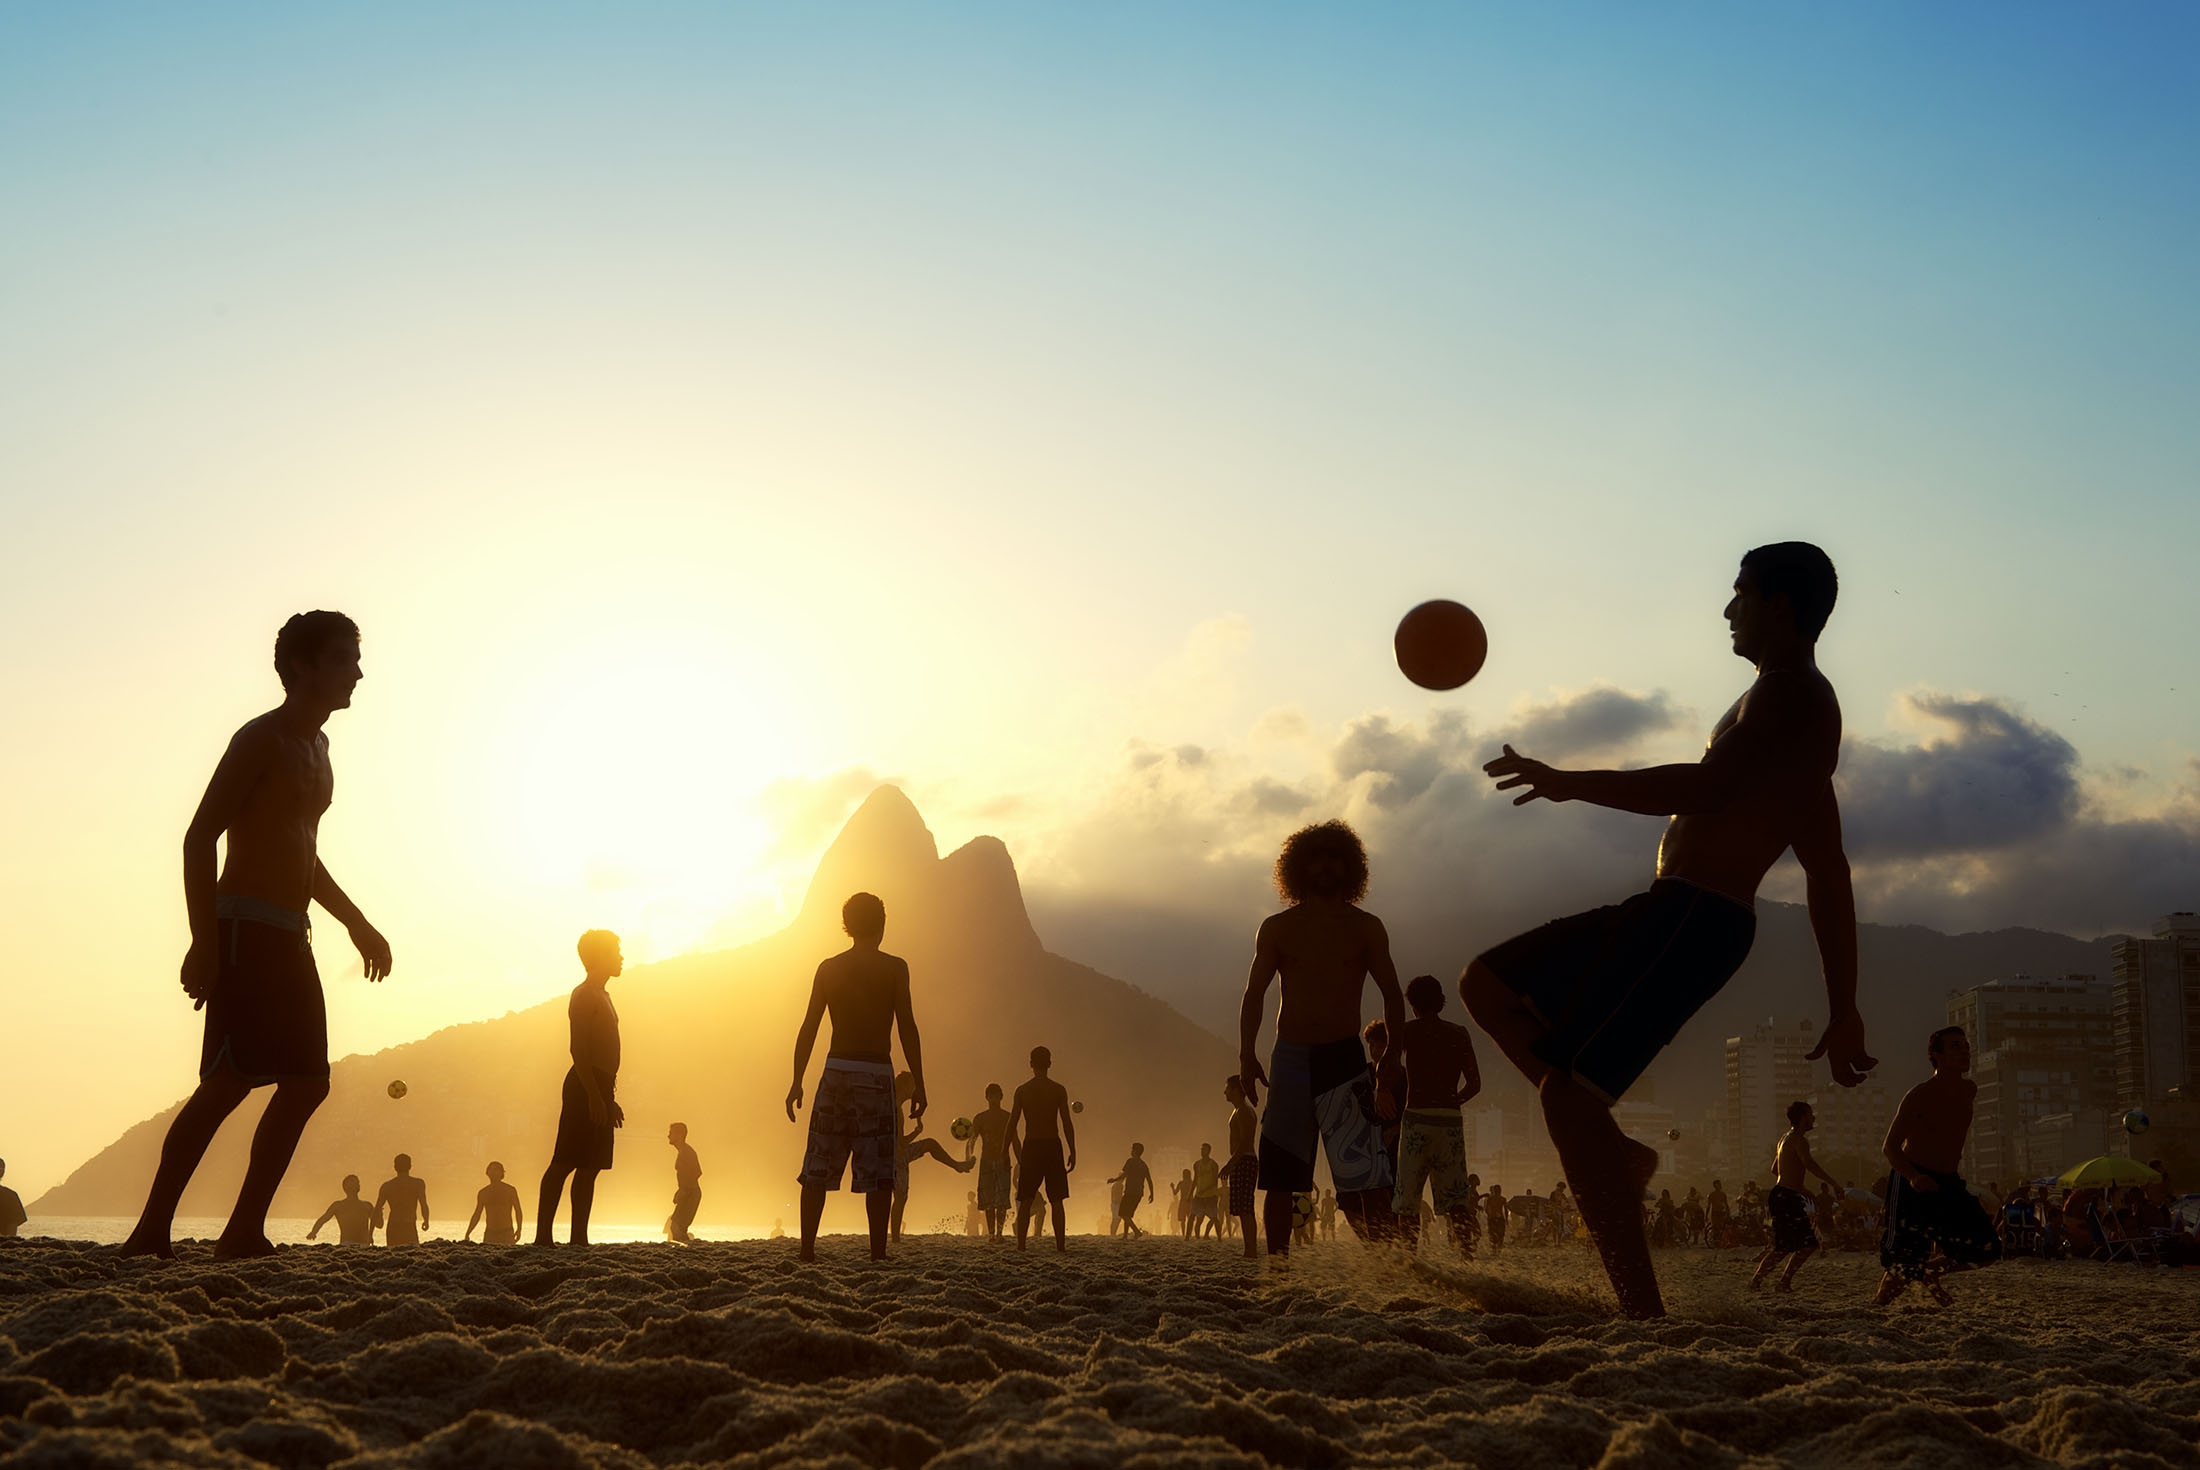 Playing football on Copacabana beach in Rio de Janeiro